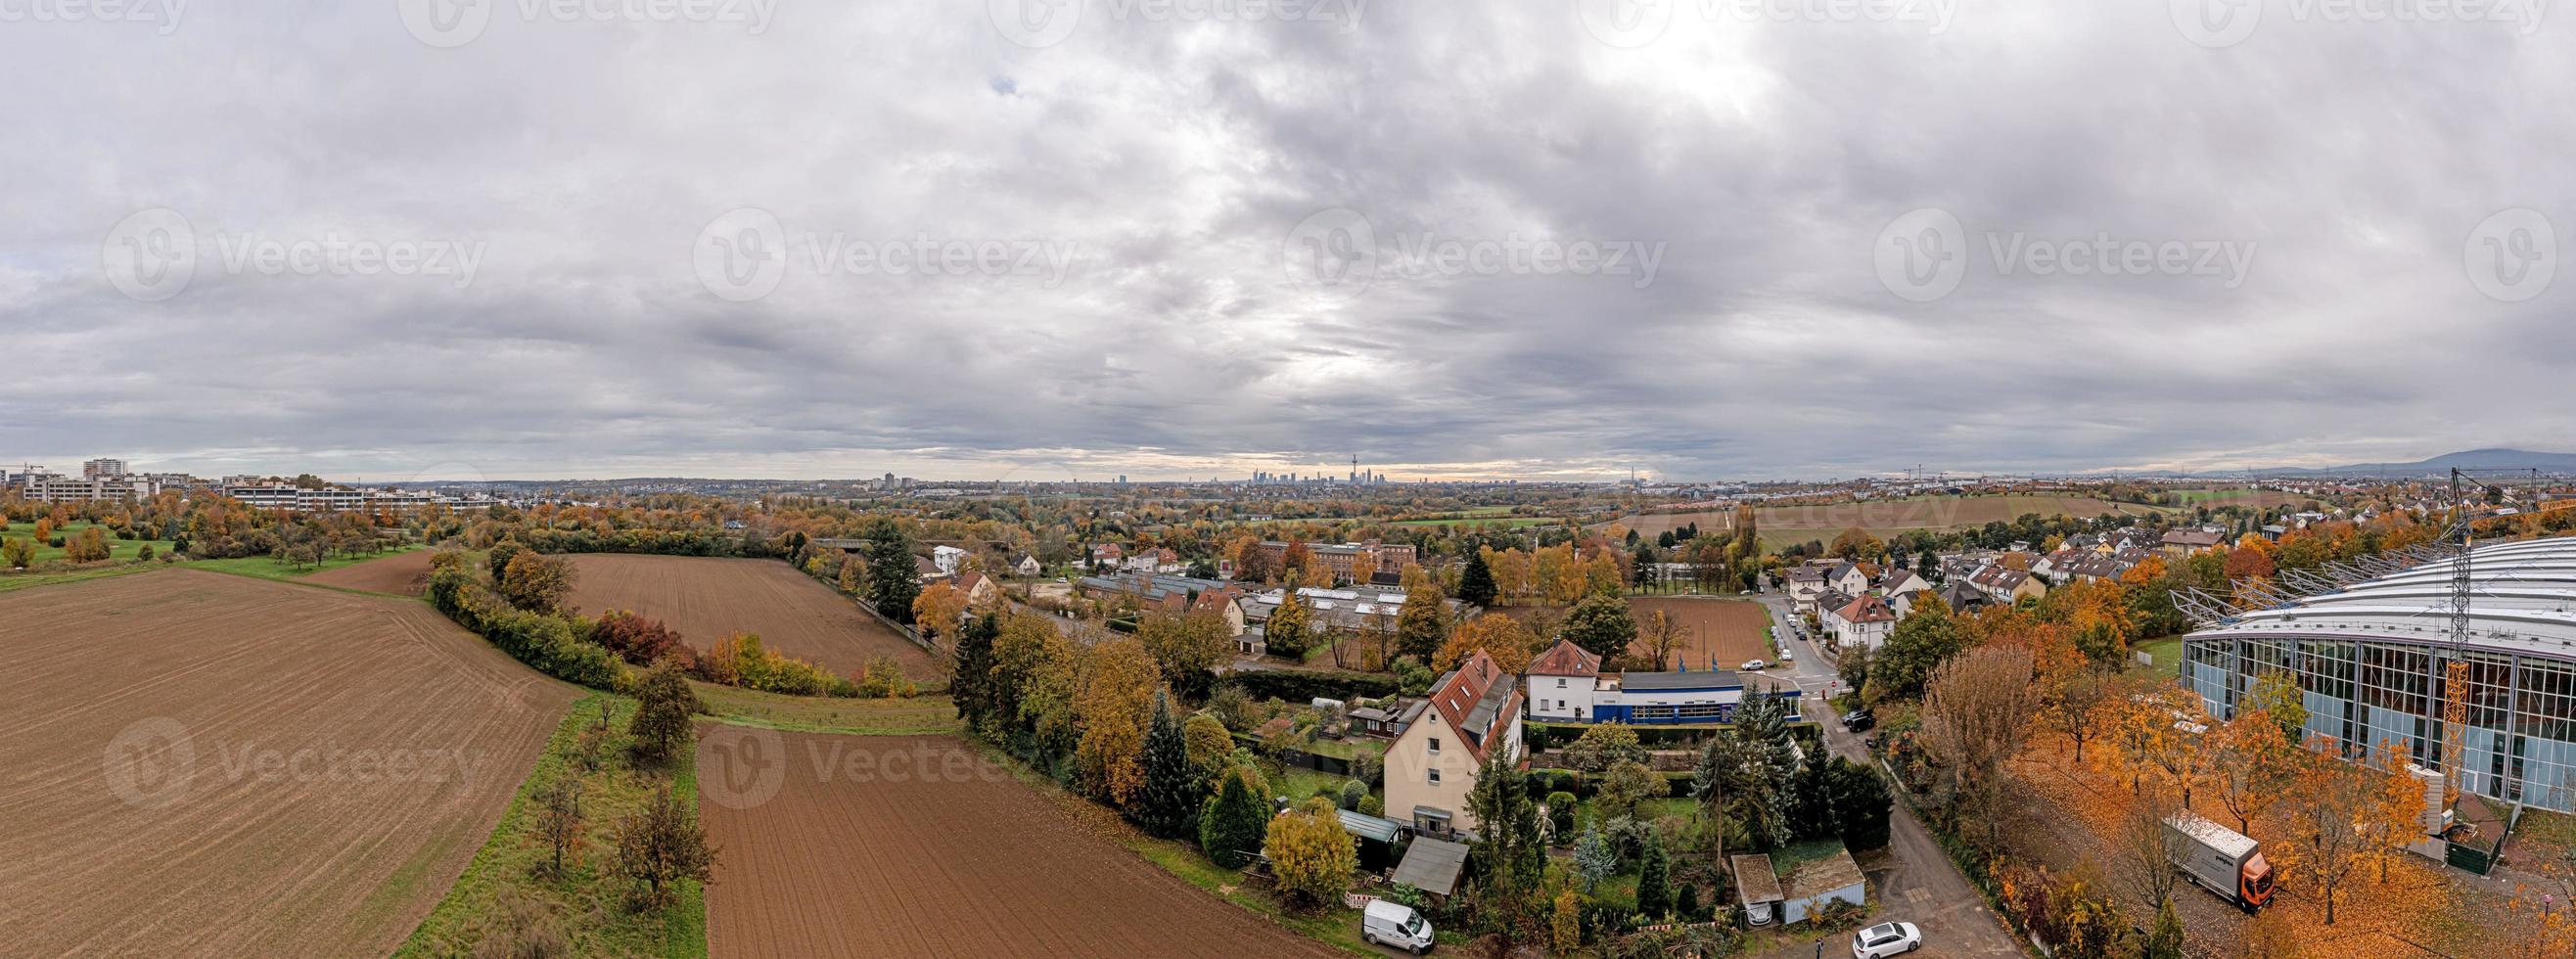 panorama- bild av frankfurt horisont från en större distans mot molnig himmel i höst foto